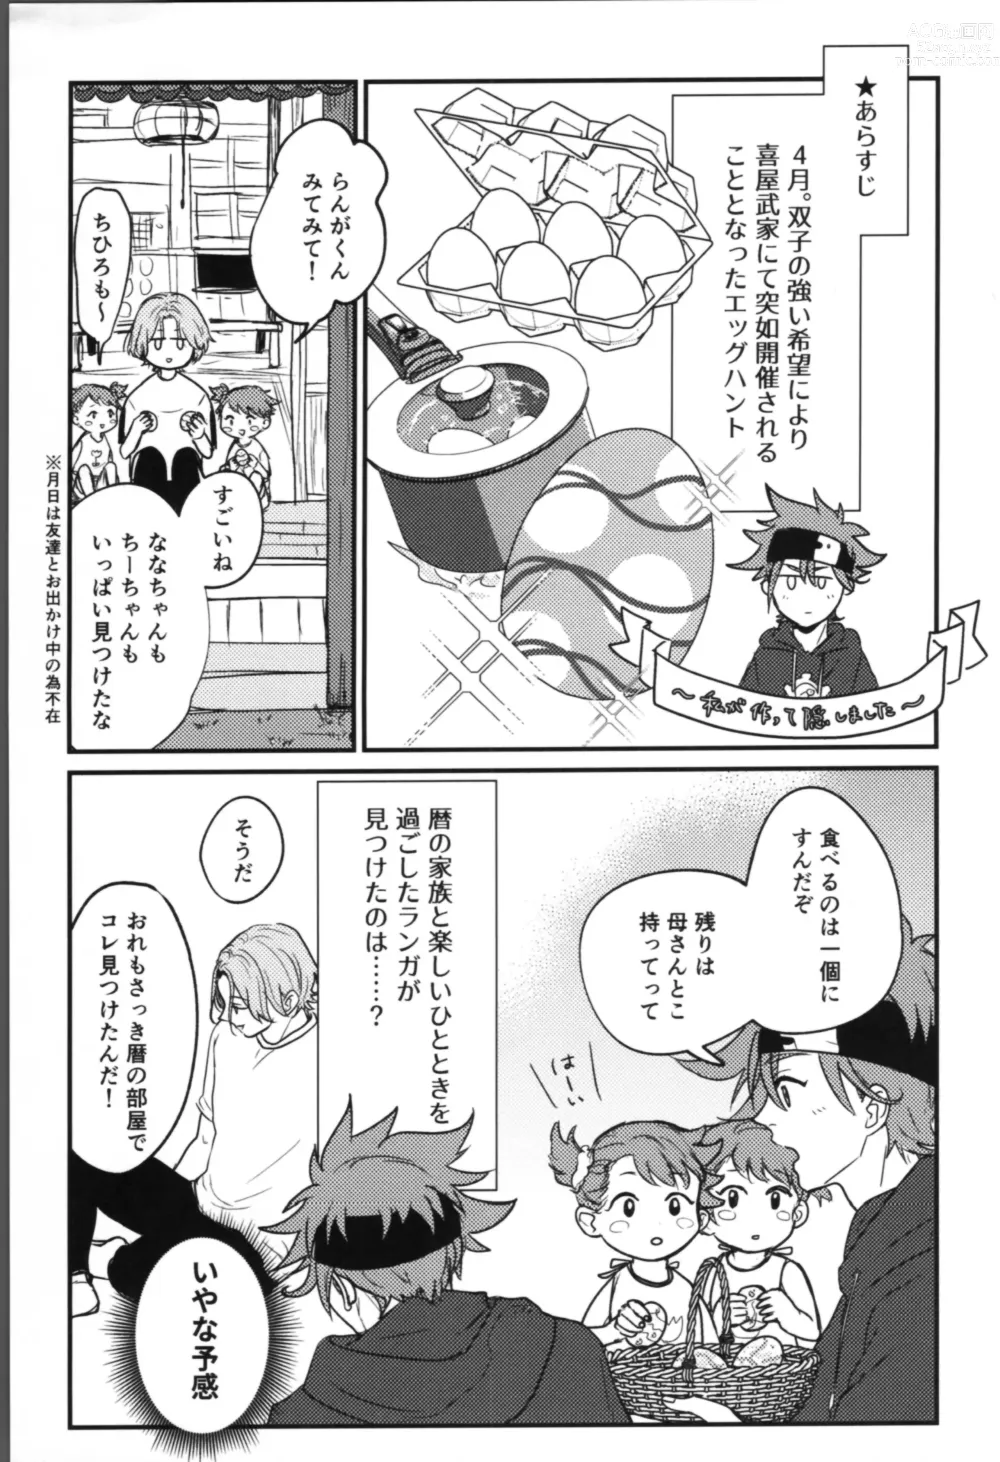 Page 5 of doujinshi Onaji ana no kijimuna